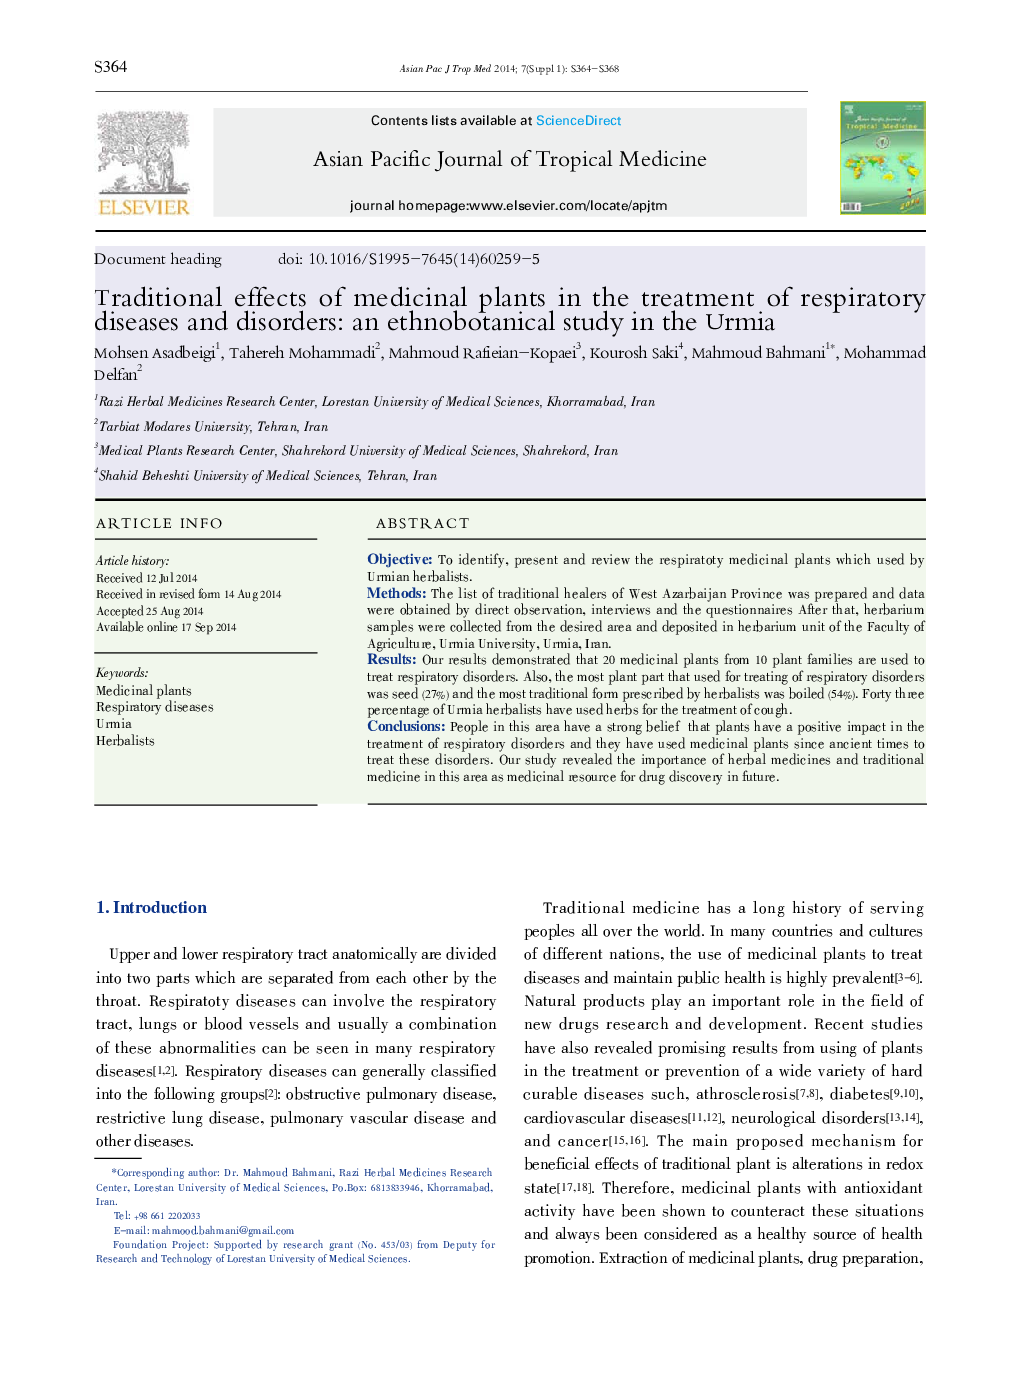 اثرات سنتی گیاهان دارویی در درمان بیماری های تنفسی و اختلالات: مطالعات نژادی در ارومیه 